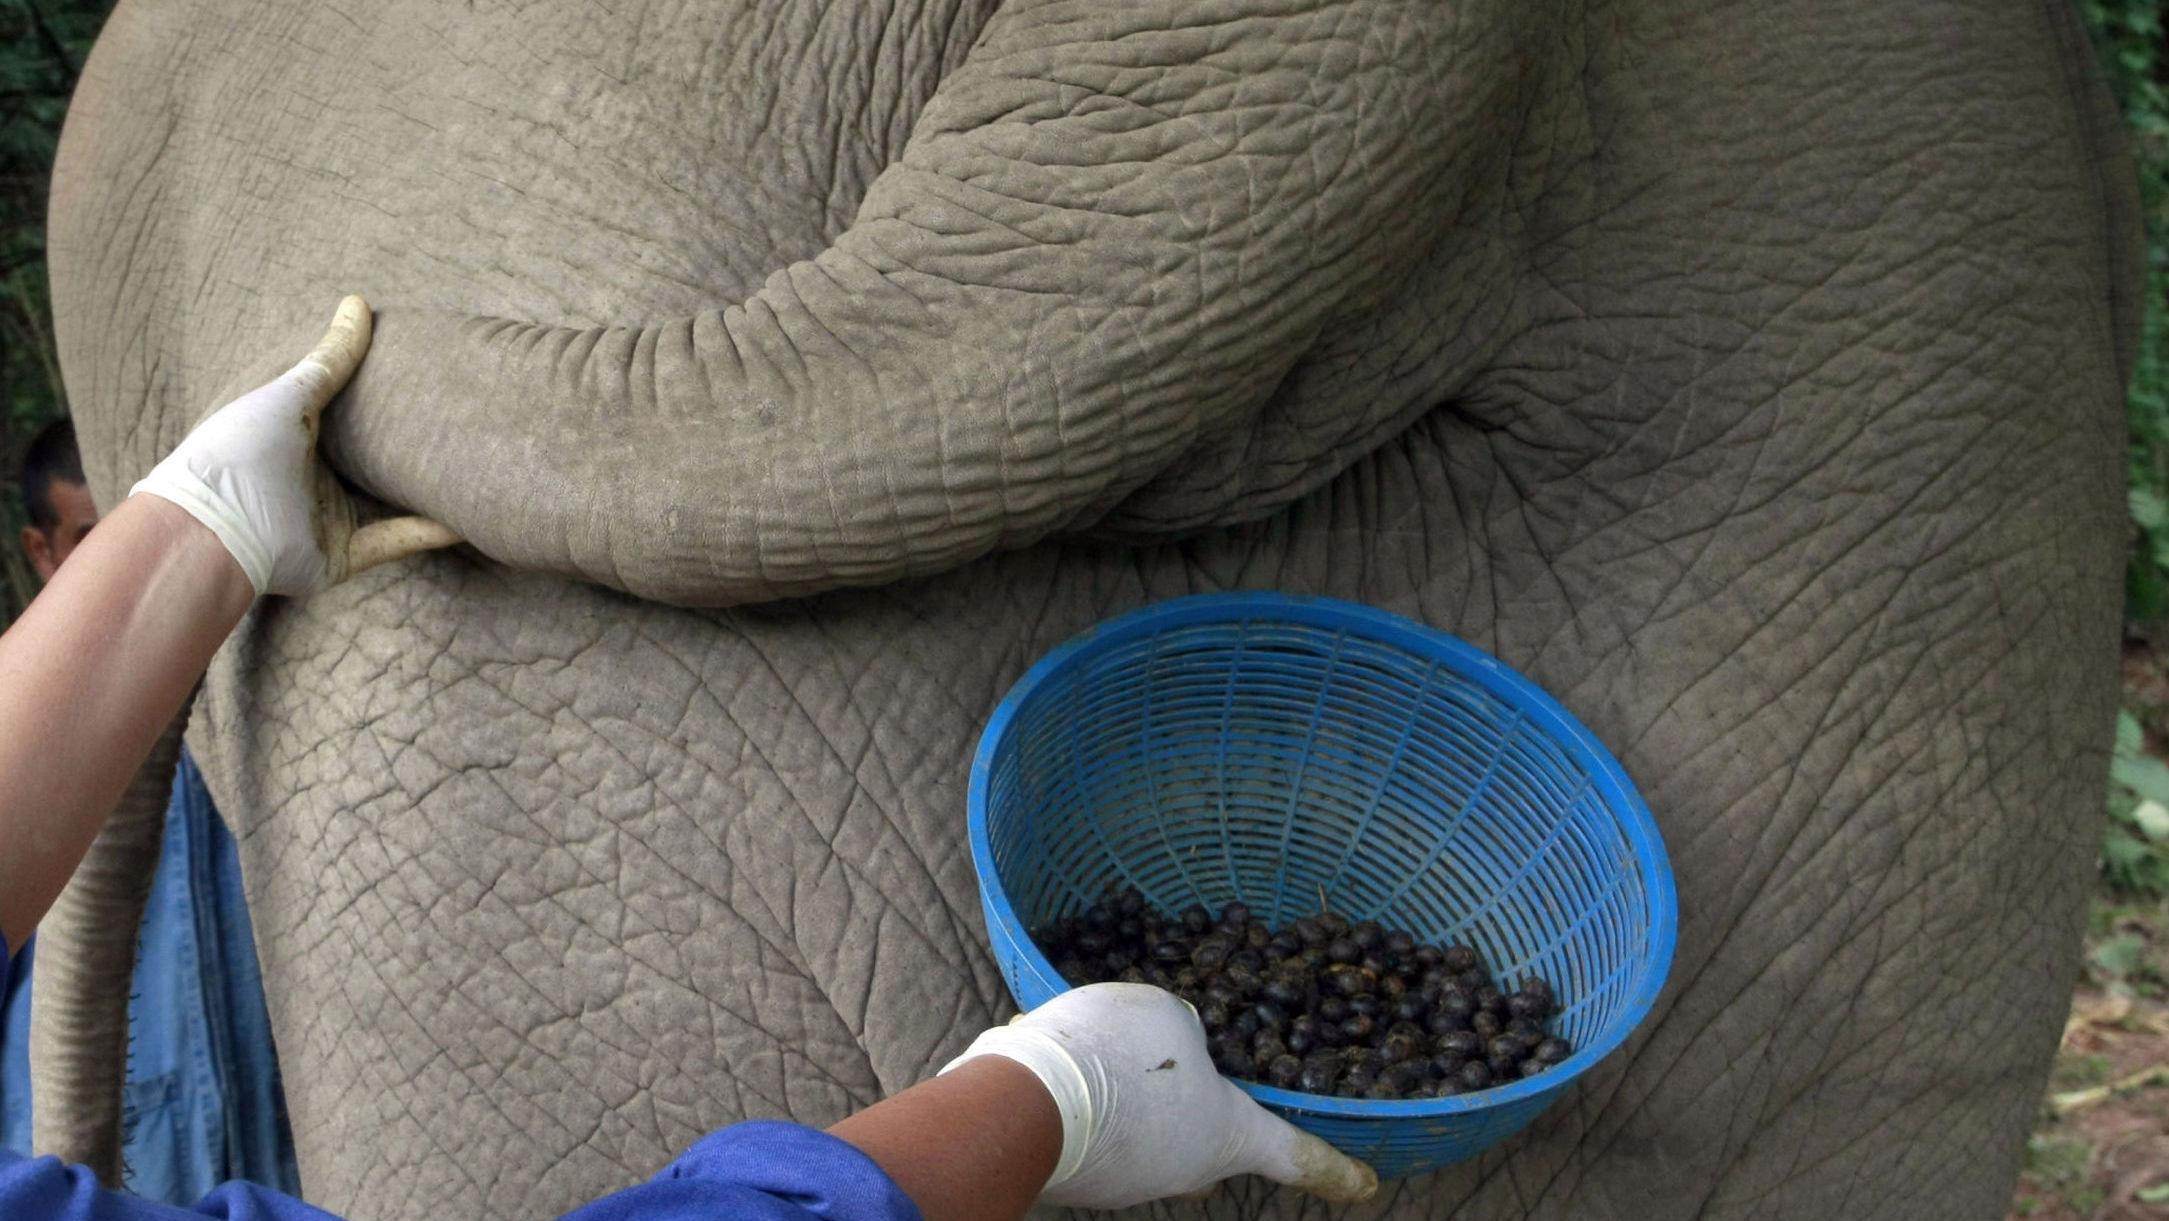 LUKSUS: Bak denne halen, og halene til de andre elefantene ved elefantkonservatet i Thailand, ligger hjemmet til verdens dyreste kaffe. Foto: Afp